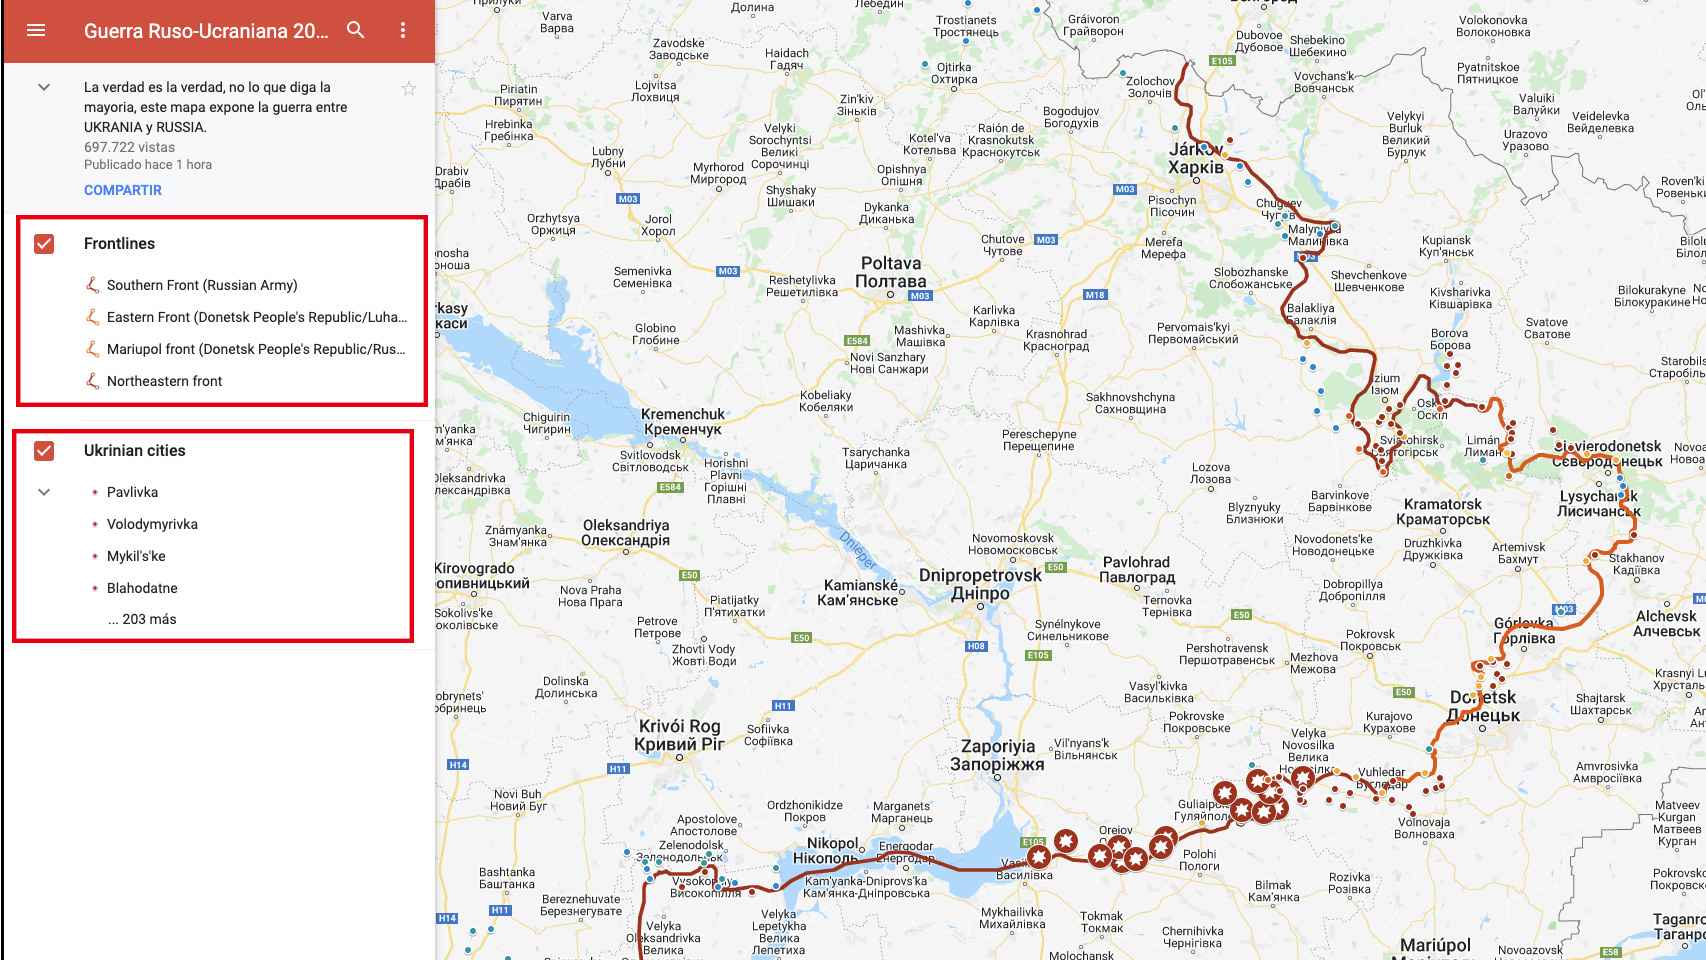 Mapa en vivo de Suriyak usando Google MyMaps.